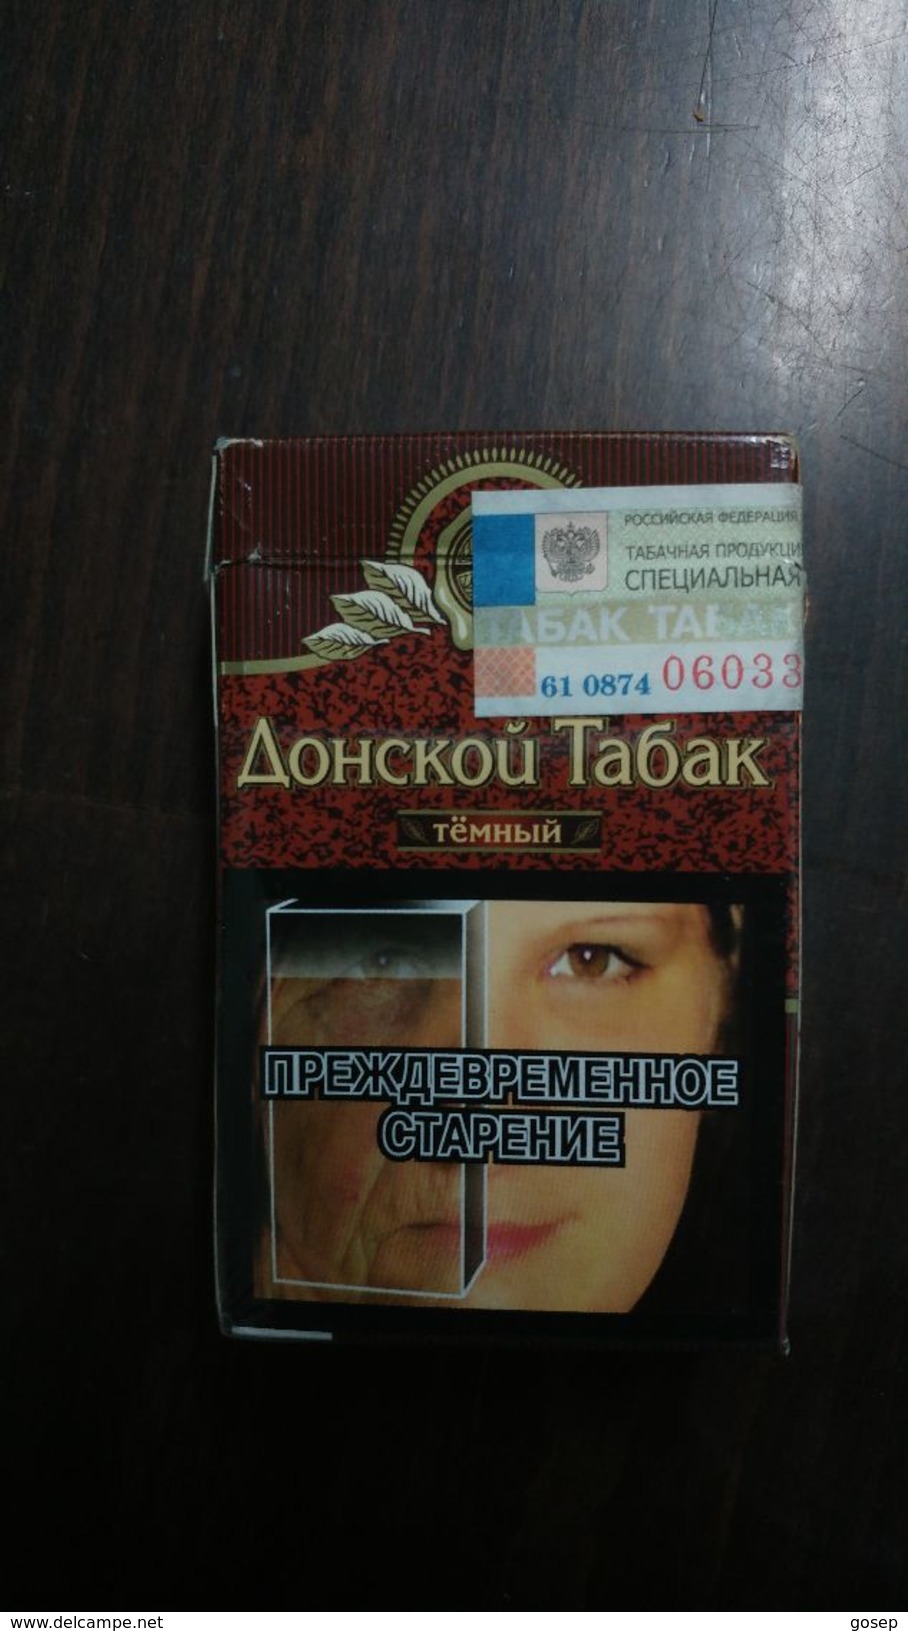 Russia-box Empty Cigarette-aohckou Tabak-(1) - Estuches Para Cigarrillos (vacios)